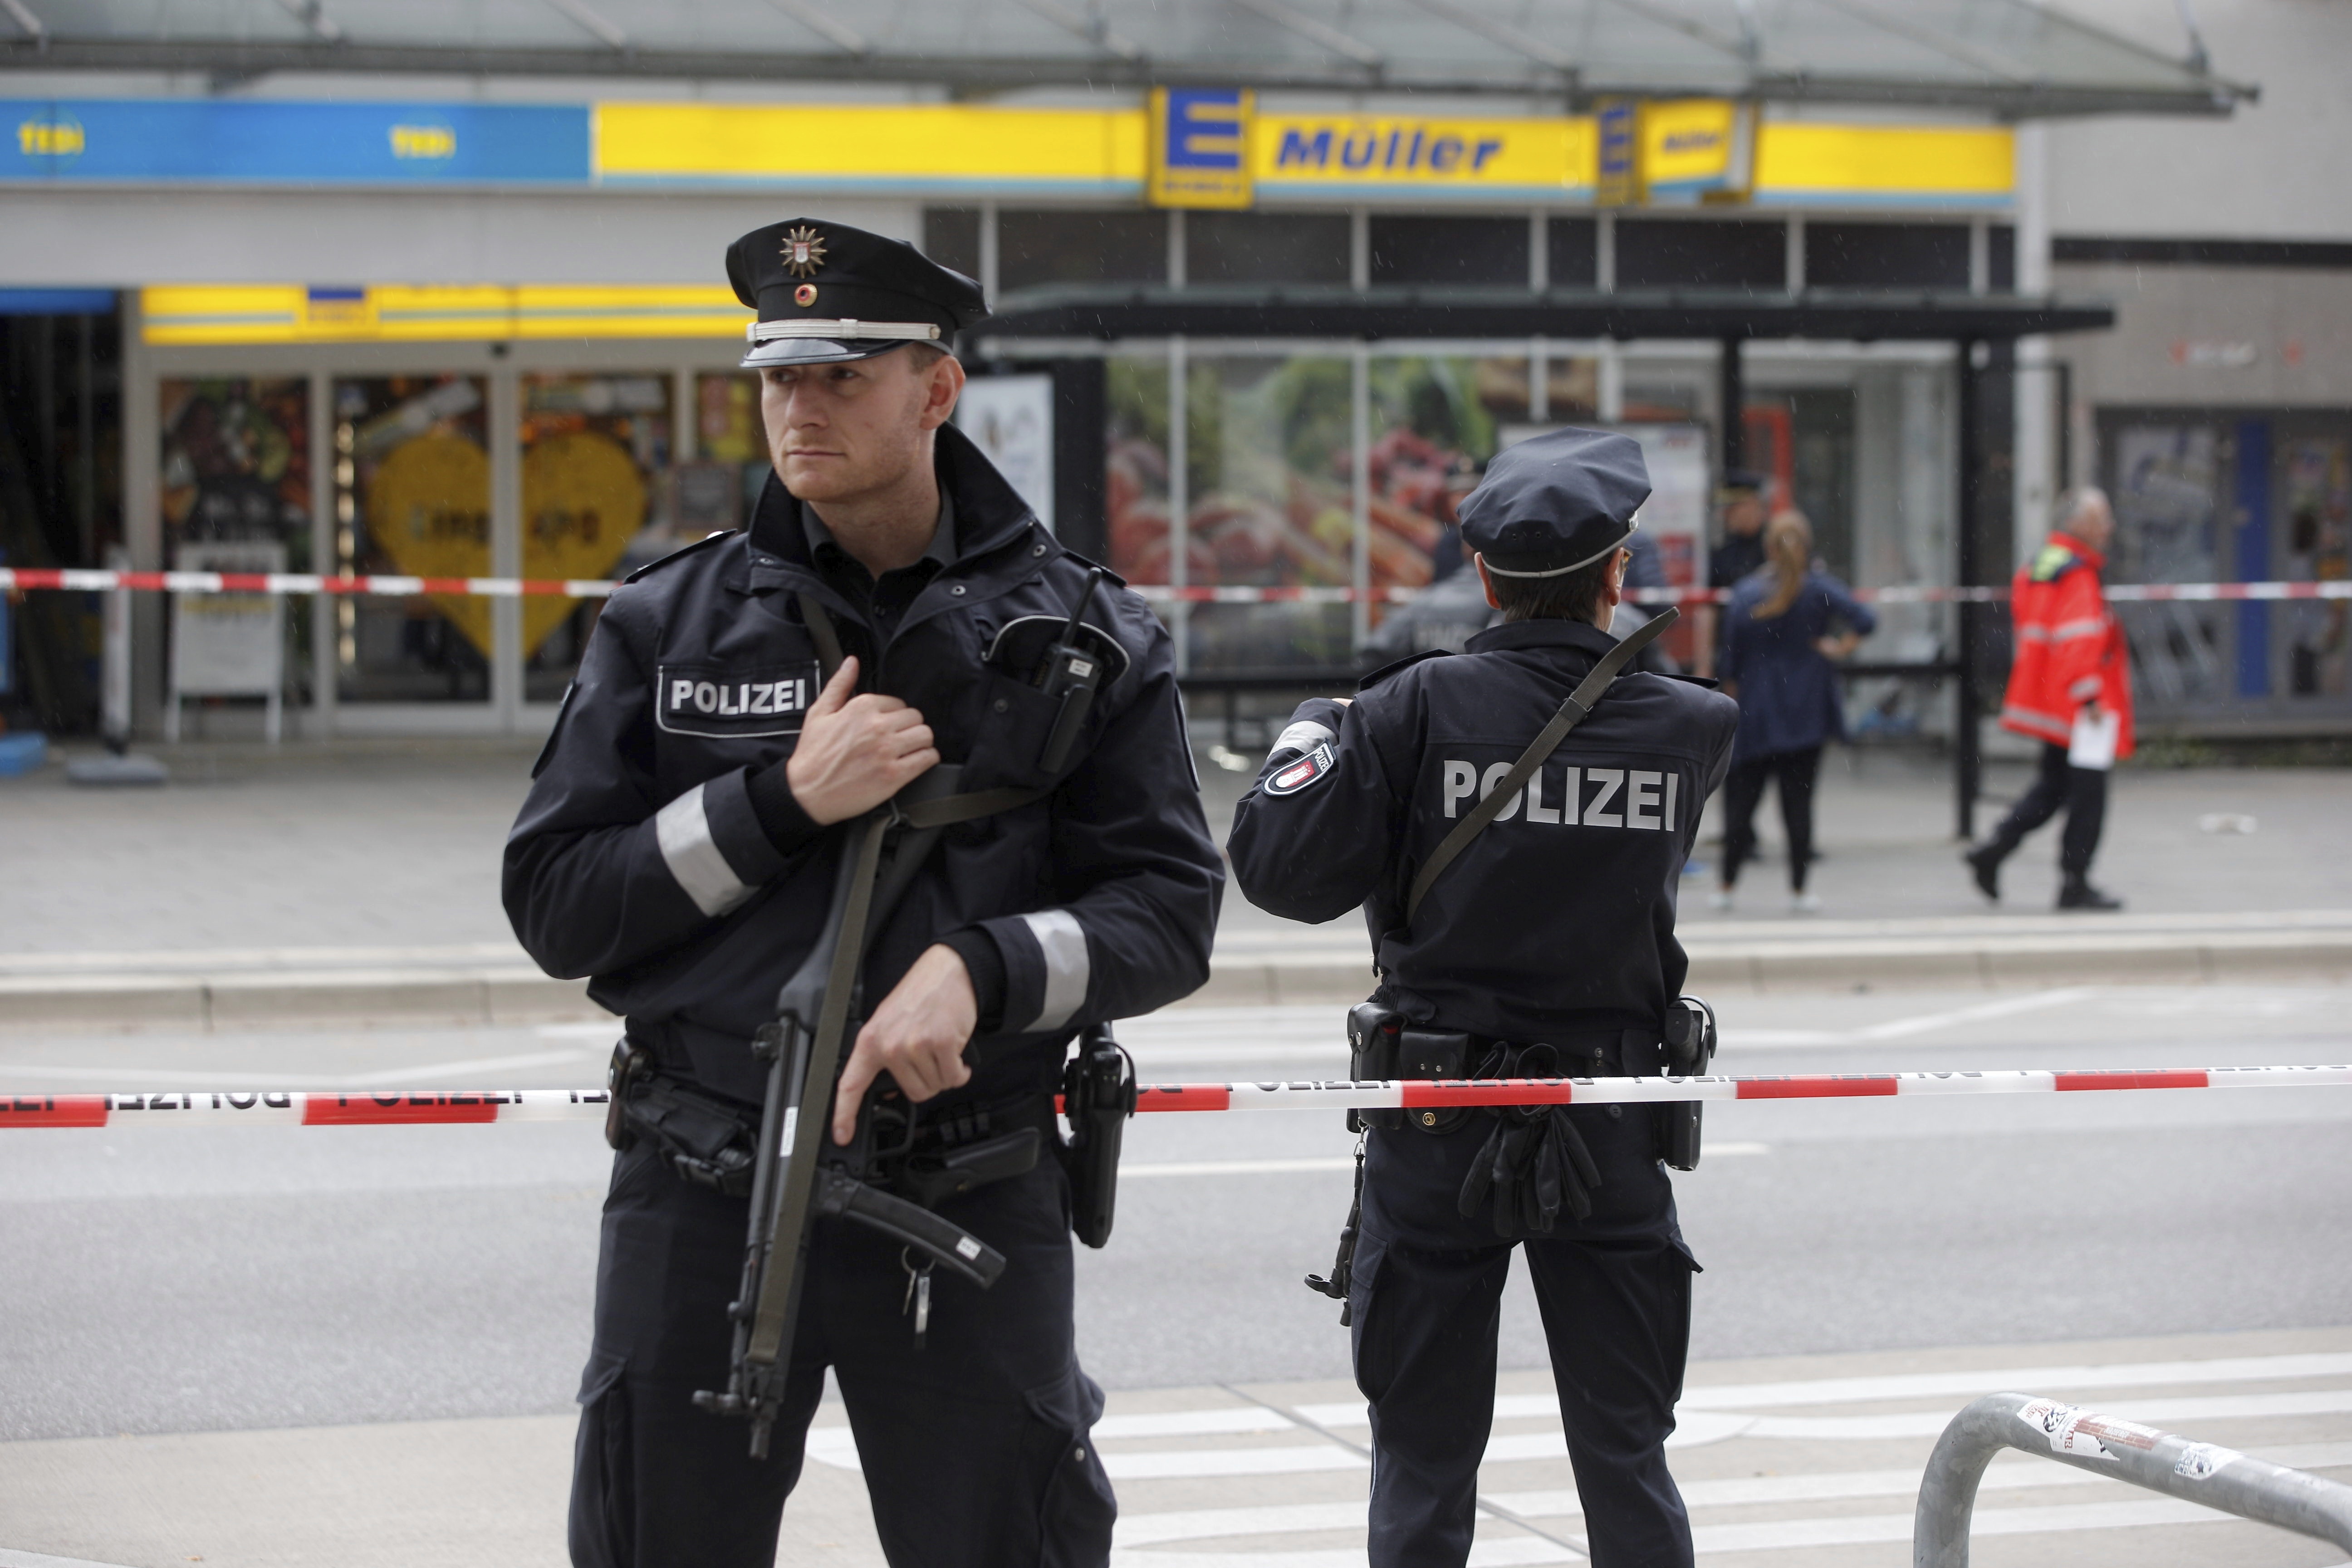 Ислямска атака с нож в магазин в Хамбург - 1 убит, 6 ранени